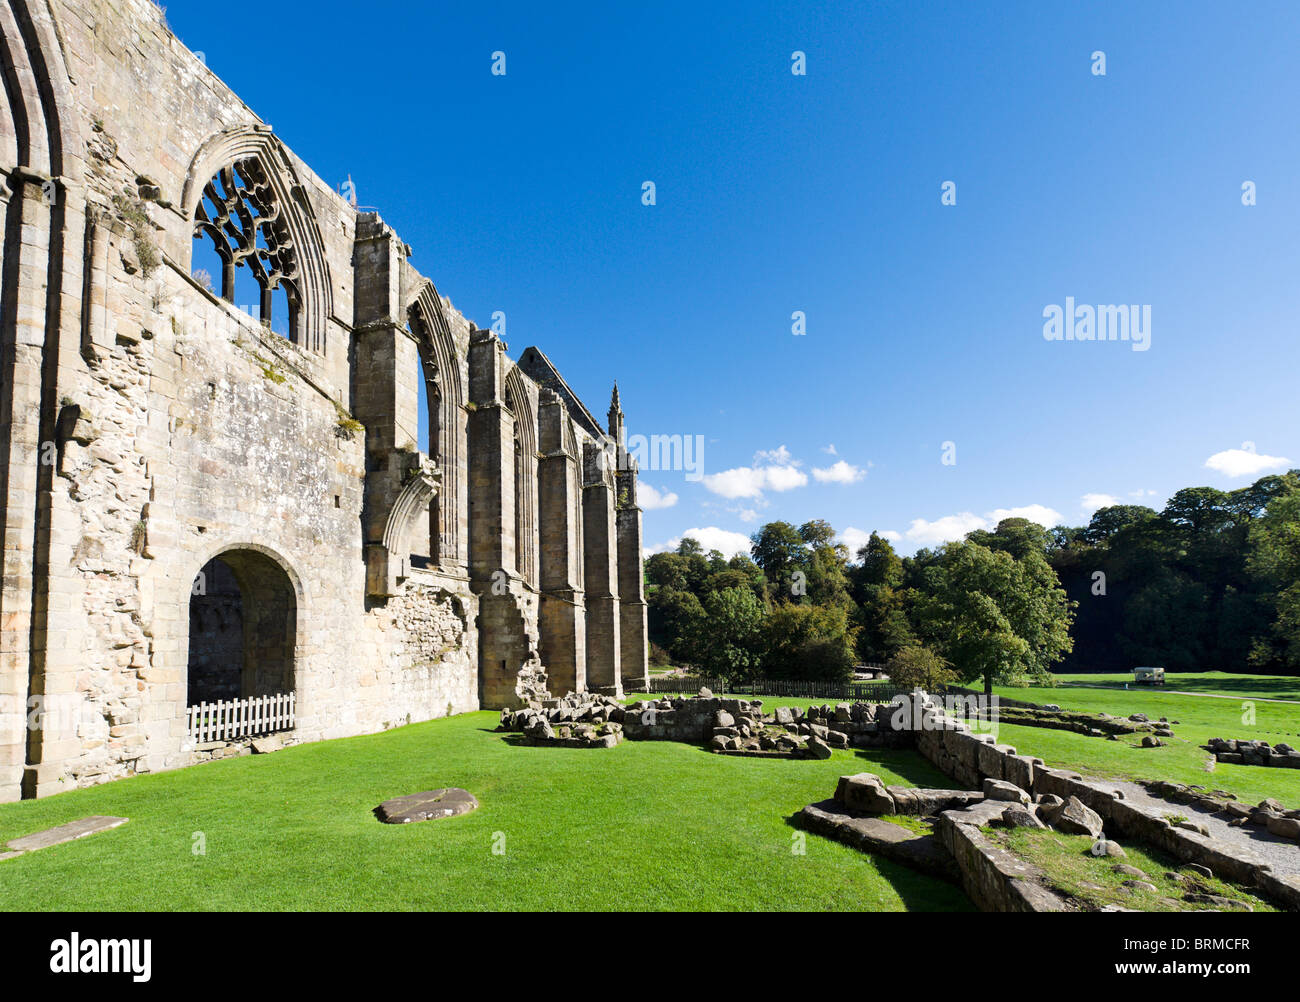 El priorato, Bolton Bolton Abbey, Wharfedale, Yorkshire Dales, North Yorkshire, Inglaterra, Reino Unido. Foto de stock